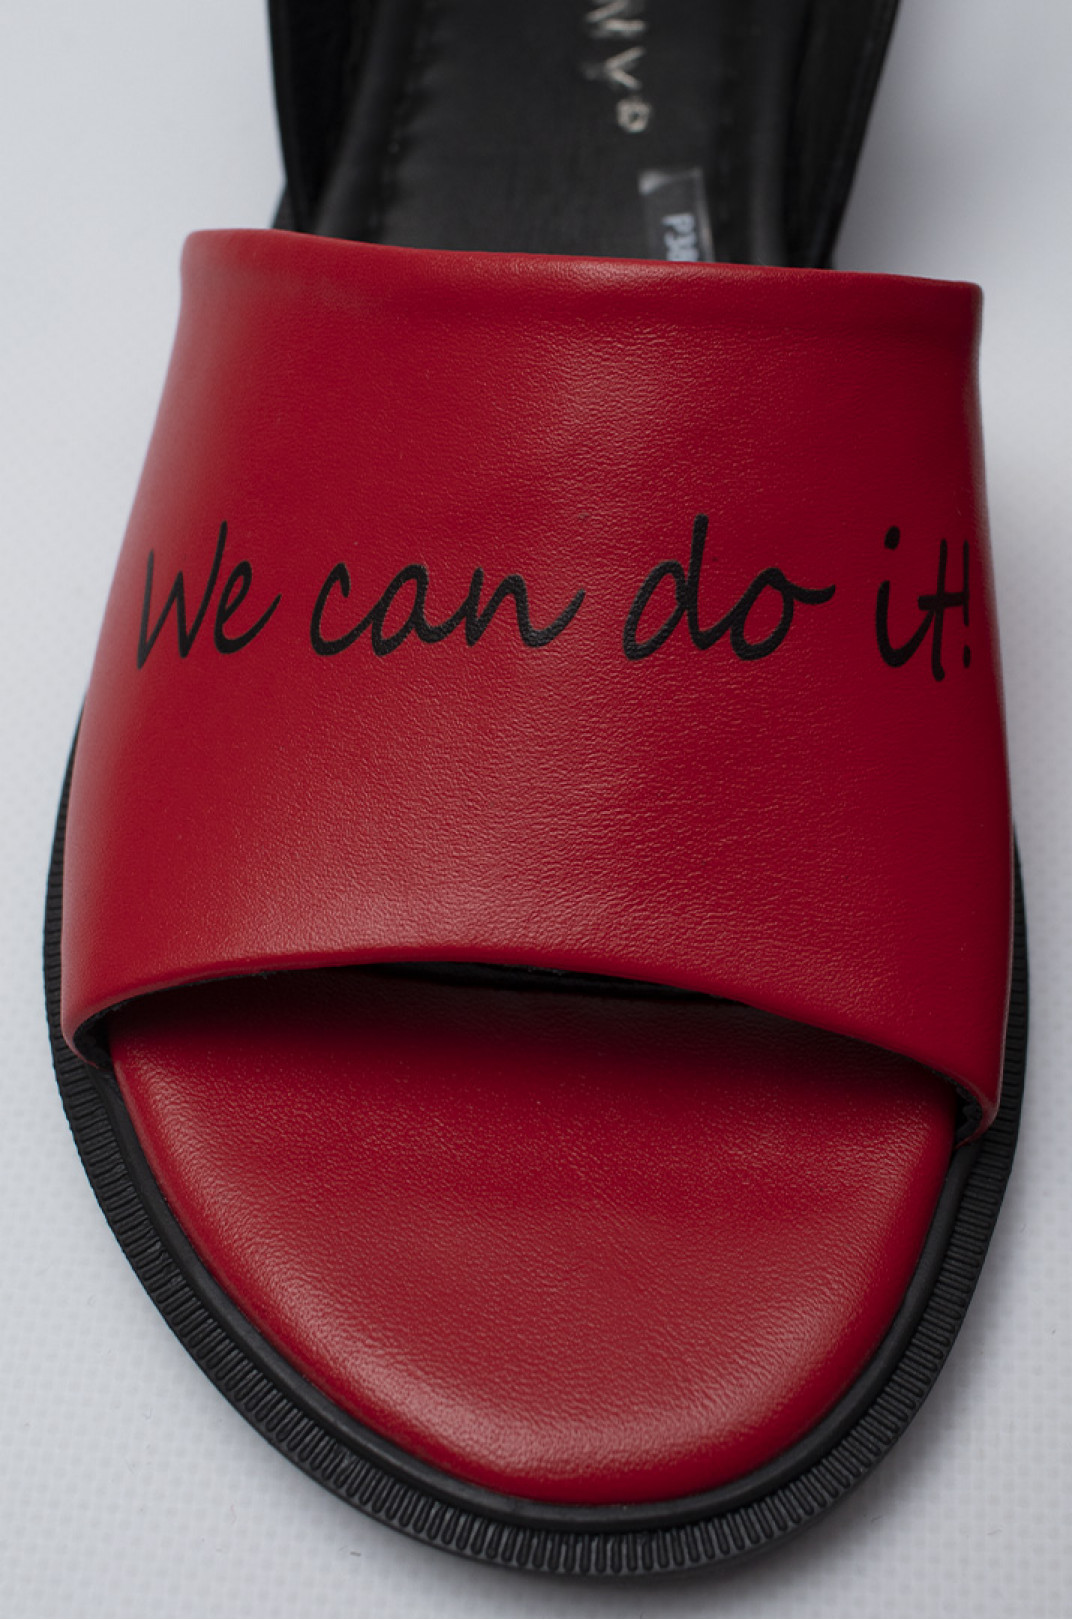 Червоні шкіряні босоніжки з написом "We can do it!" великих розмірів